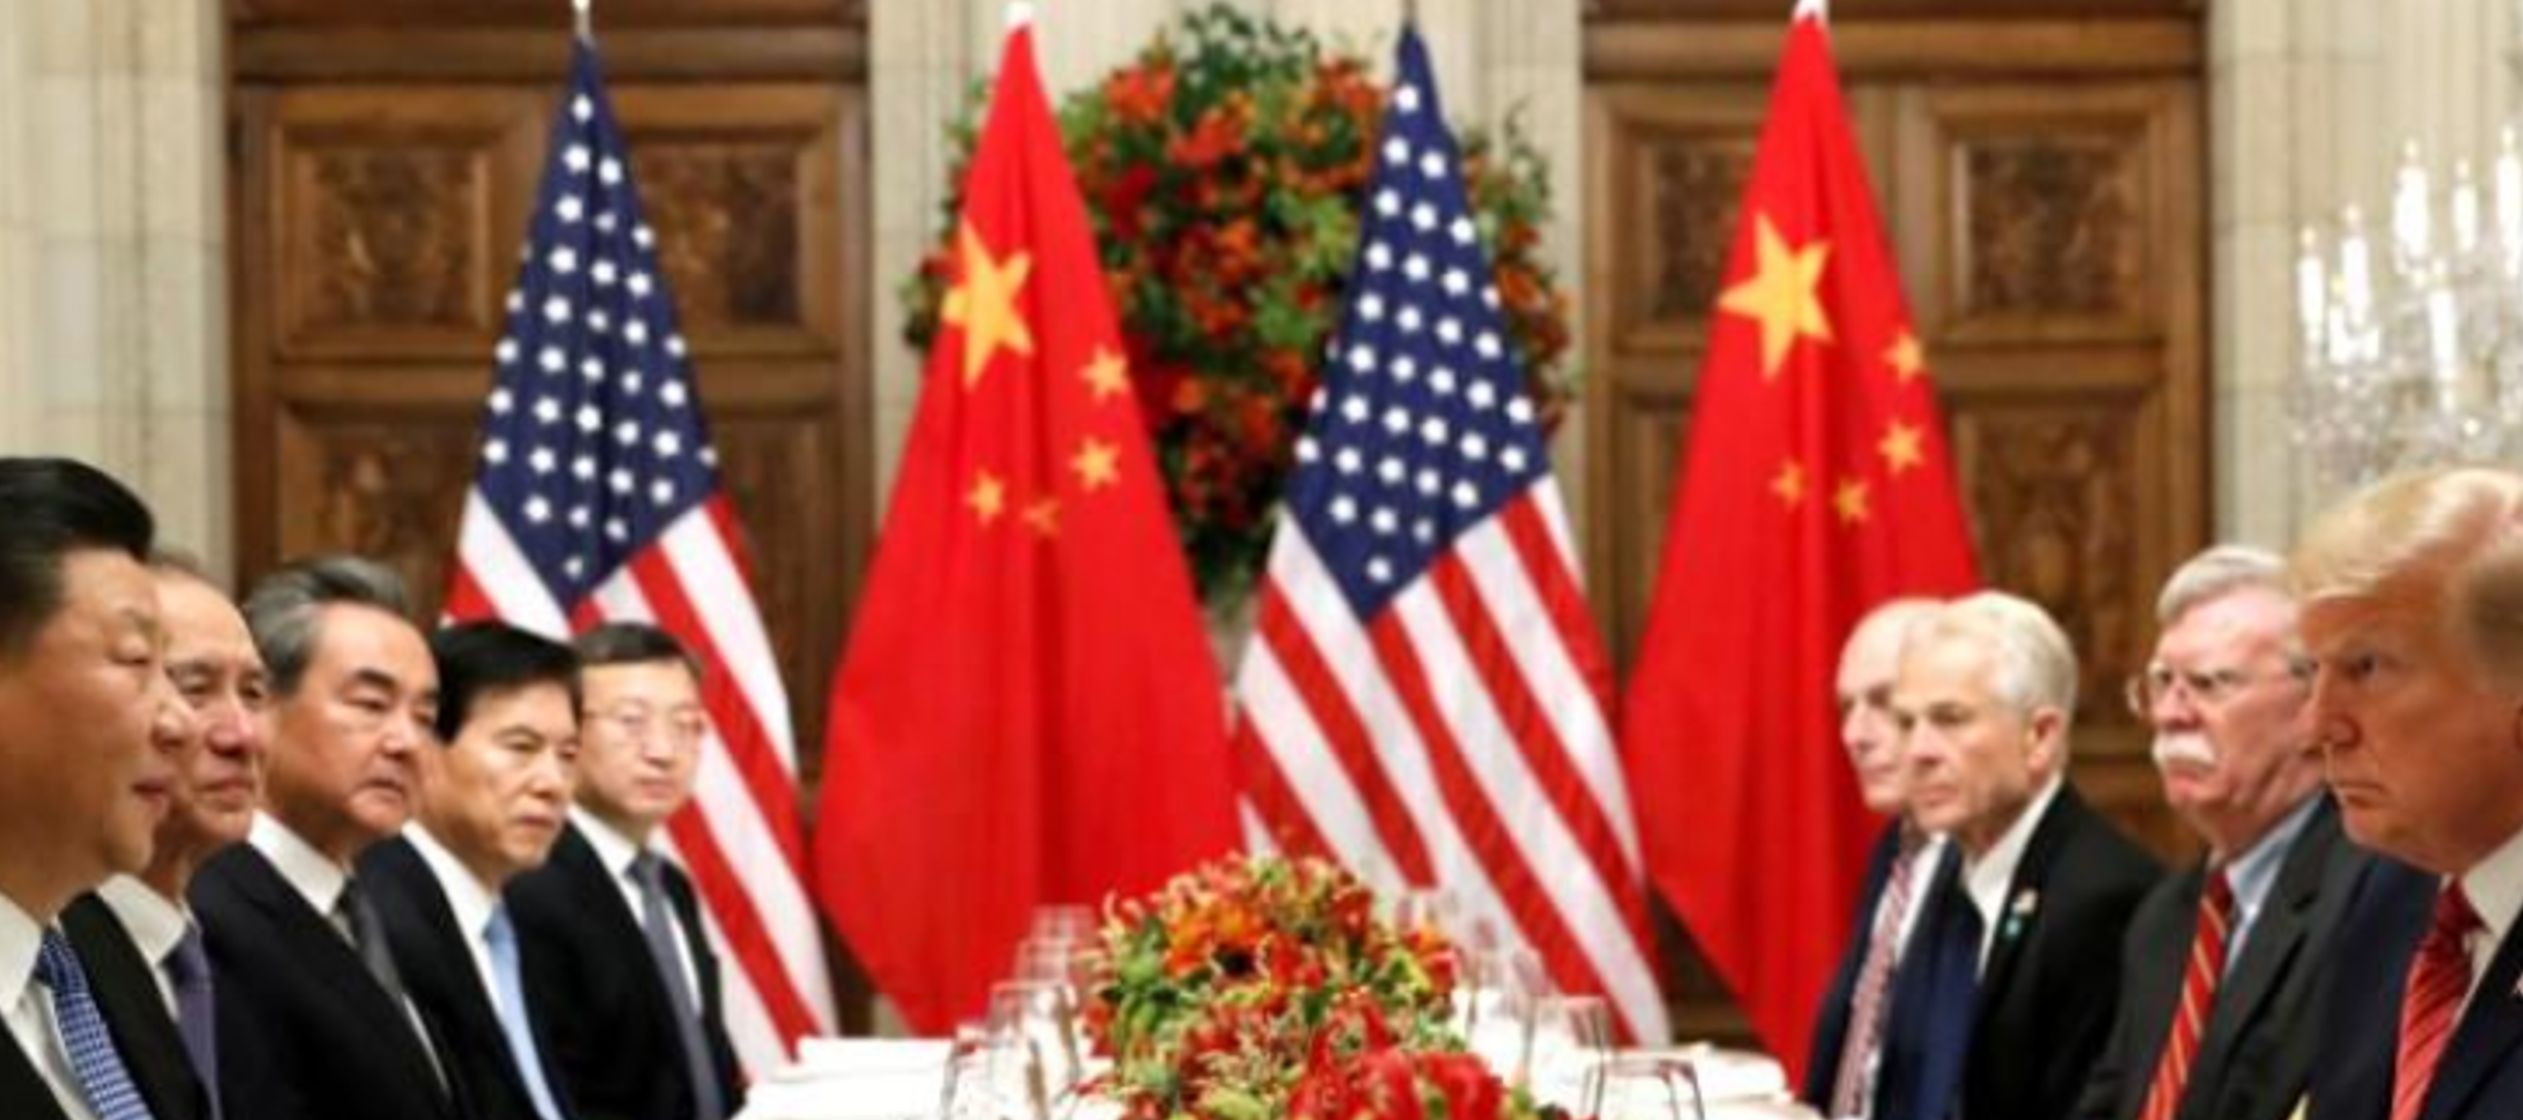 Trump, quien está orgulloso de tener una relación cálida con Xi, dijo la...